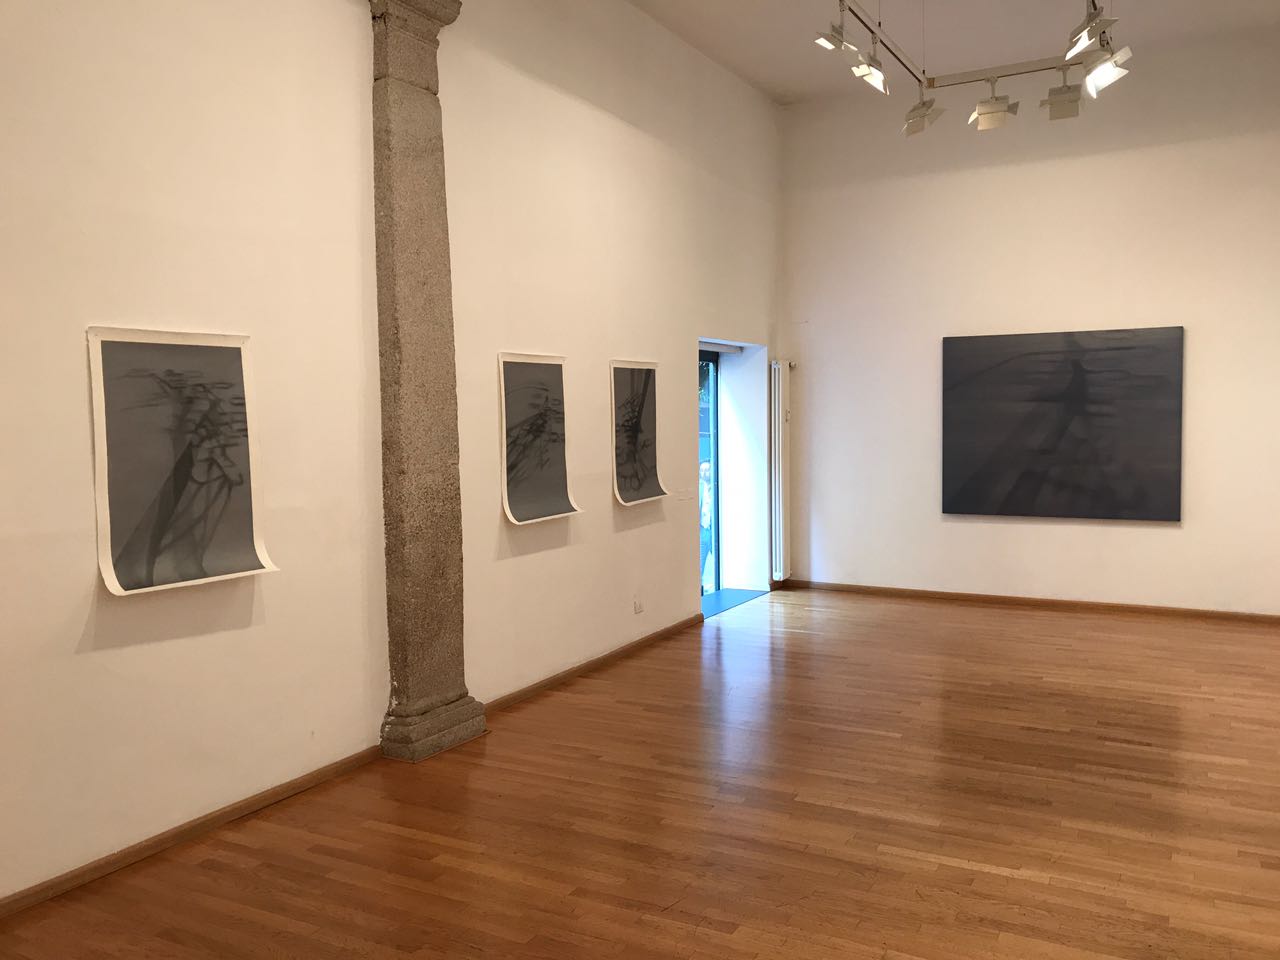 Antonio Marchetti Lamera. Storia di un’ombra. Exhibition view at Nuova Galleria Morone, Milano 2017